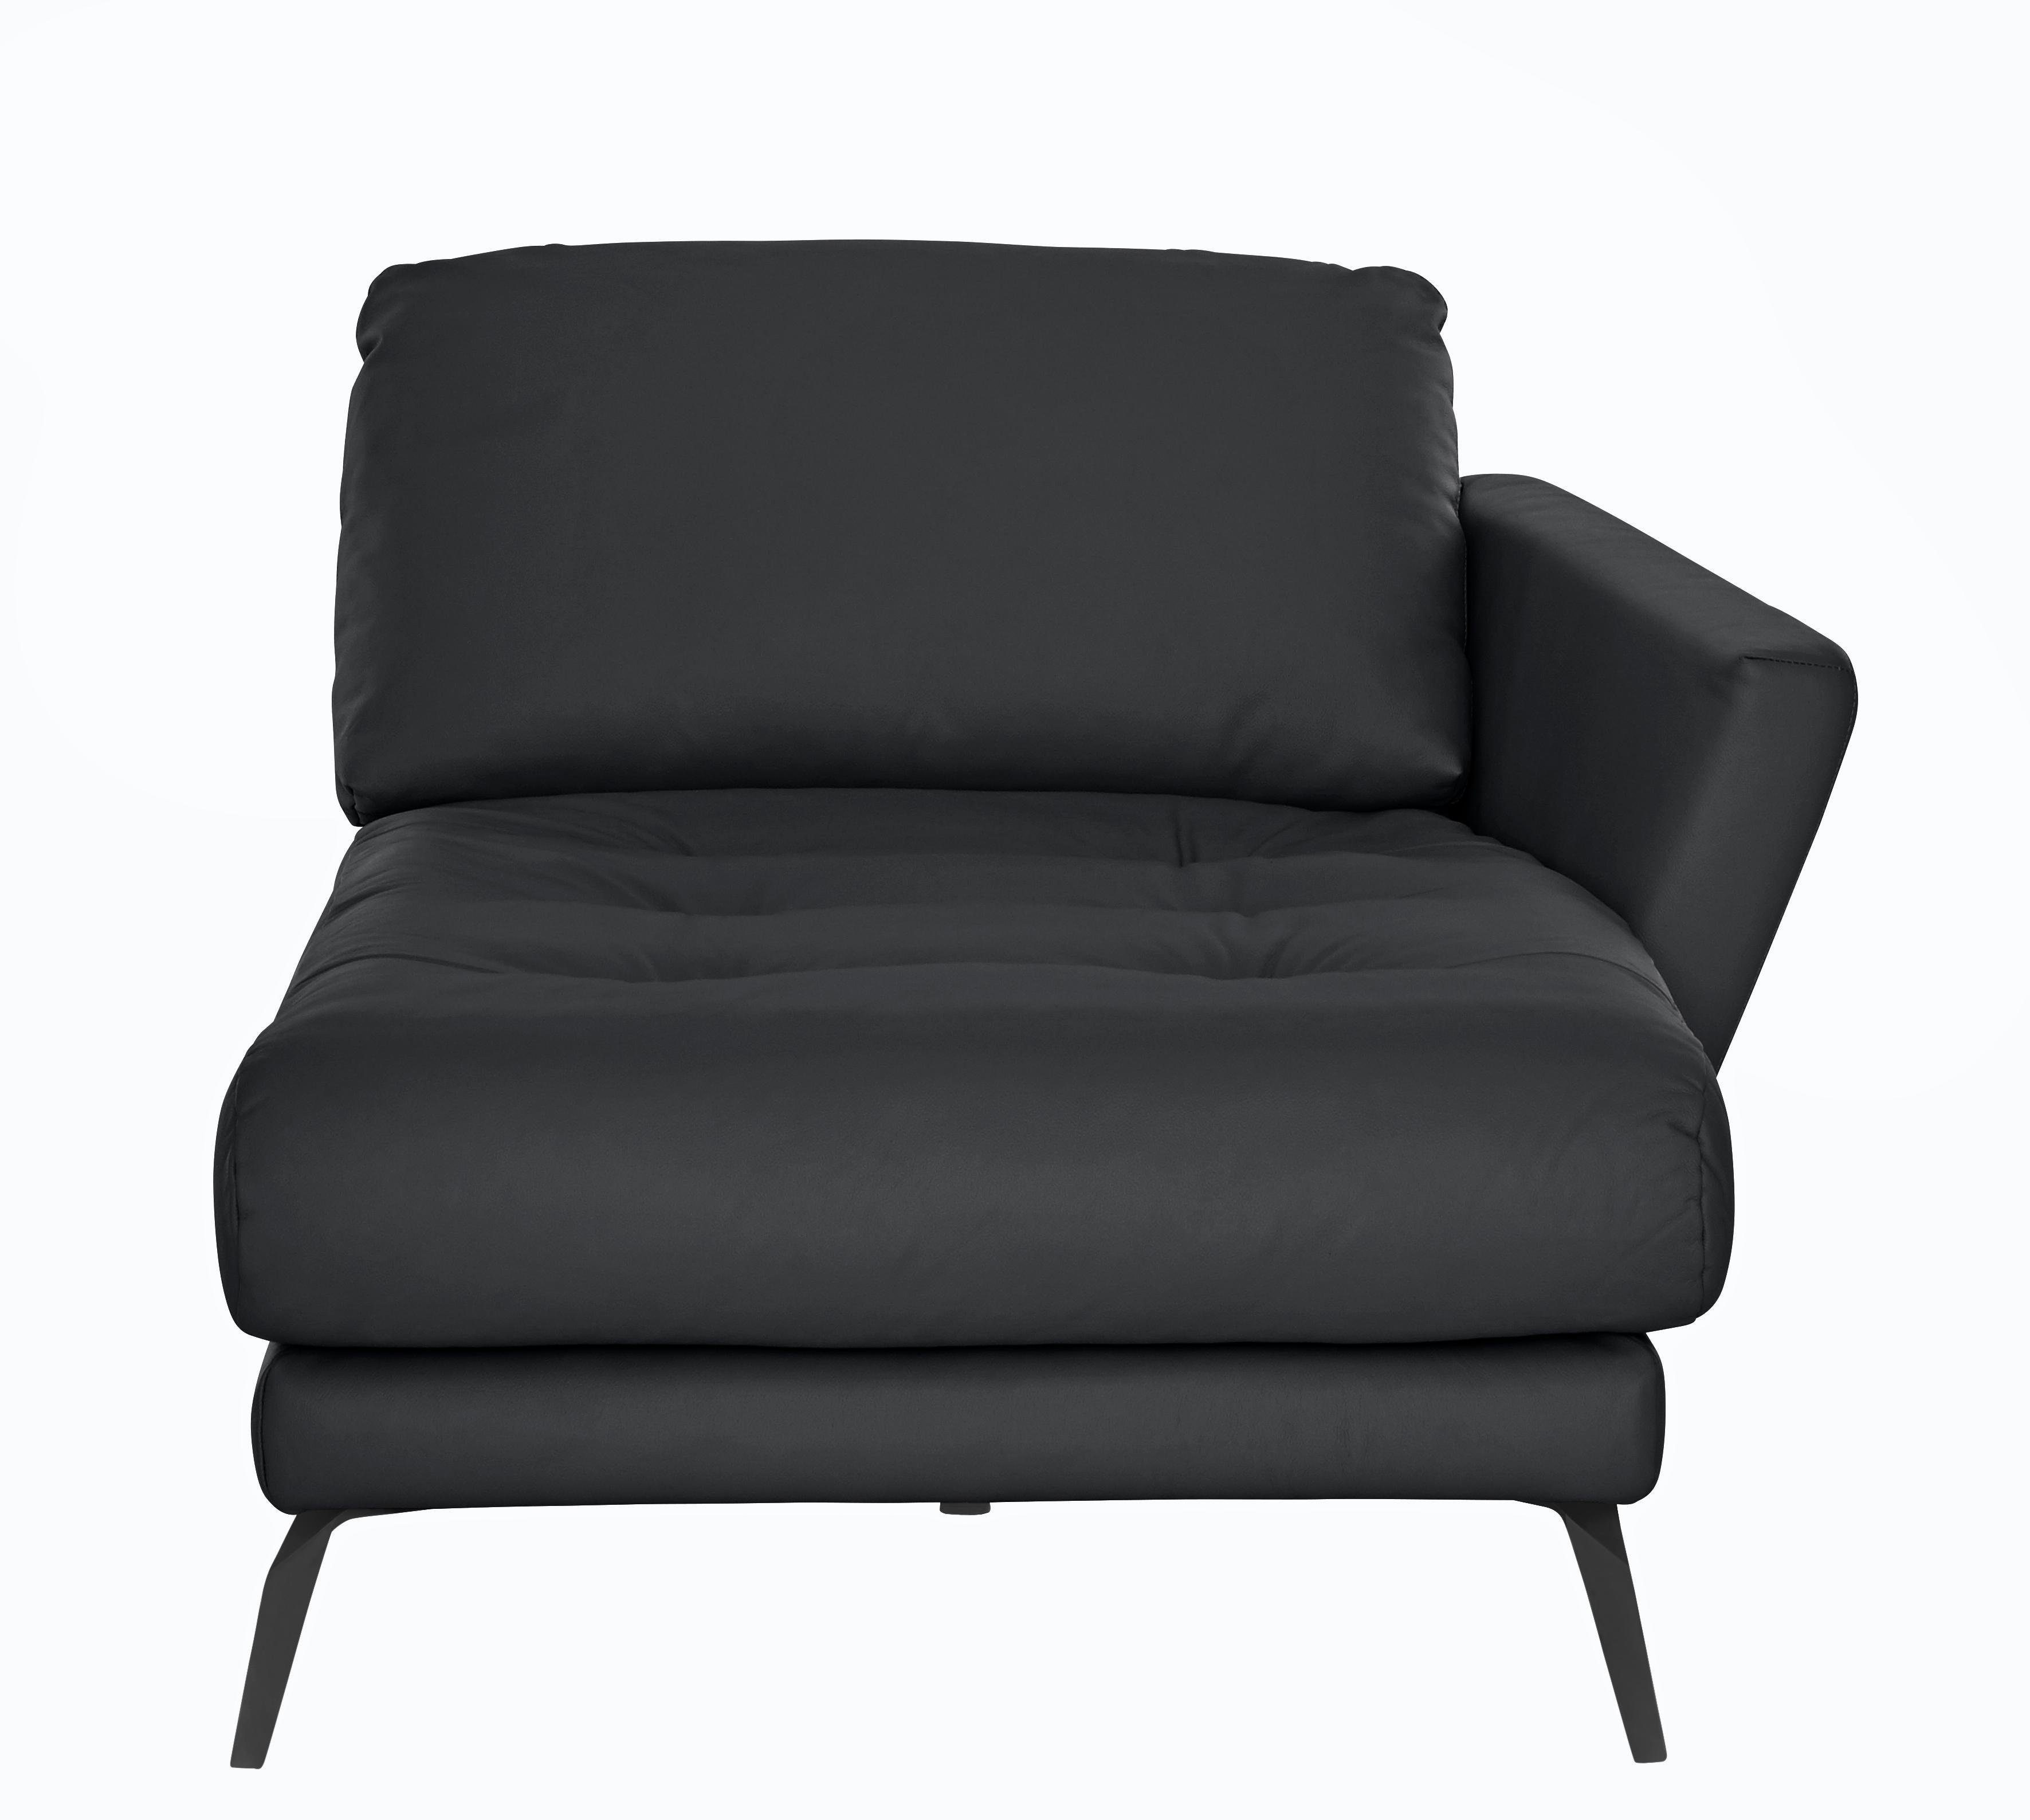 W.SCHILLIG Chaiselongue softy, pulverbeschichtet Heftung Sitz, schwarz Füße mit dekorativer im